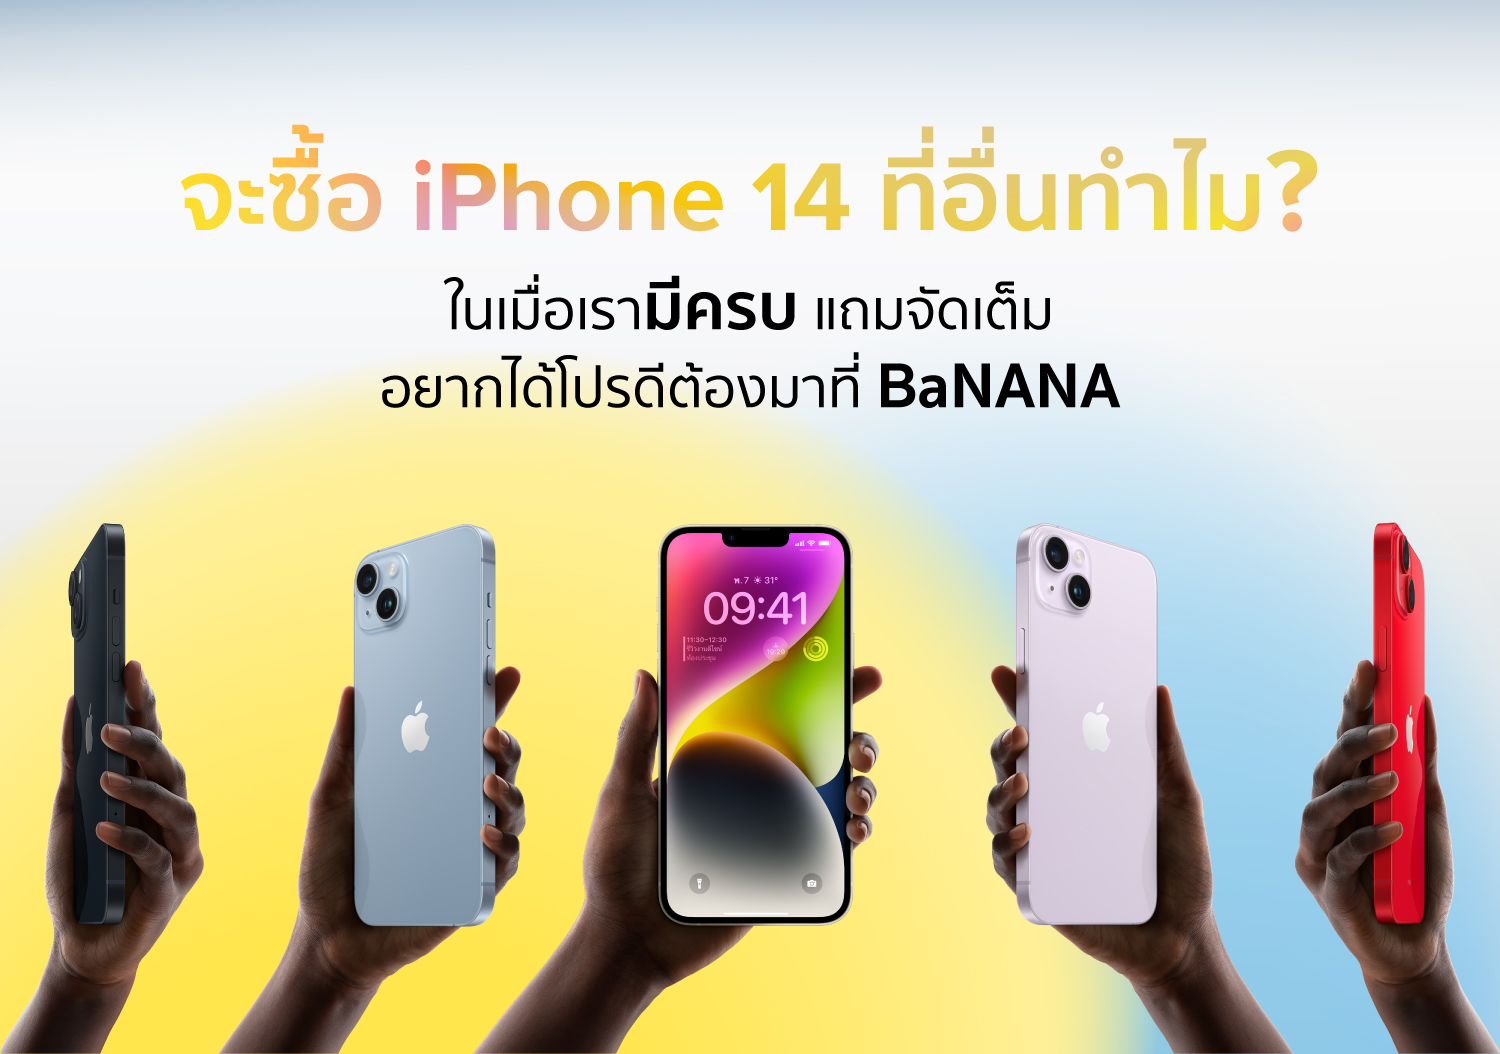 จะซื้อไอโฟน 14 ที่อื่นทำไม? ในเมื่อเรามี ‘ครบ’ ต้องมาที่ ‘BaNANA’